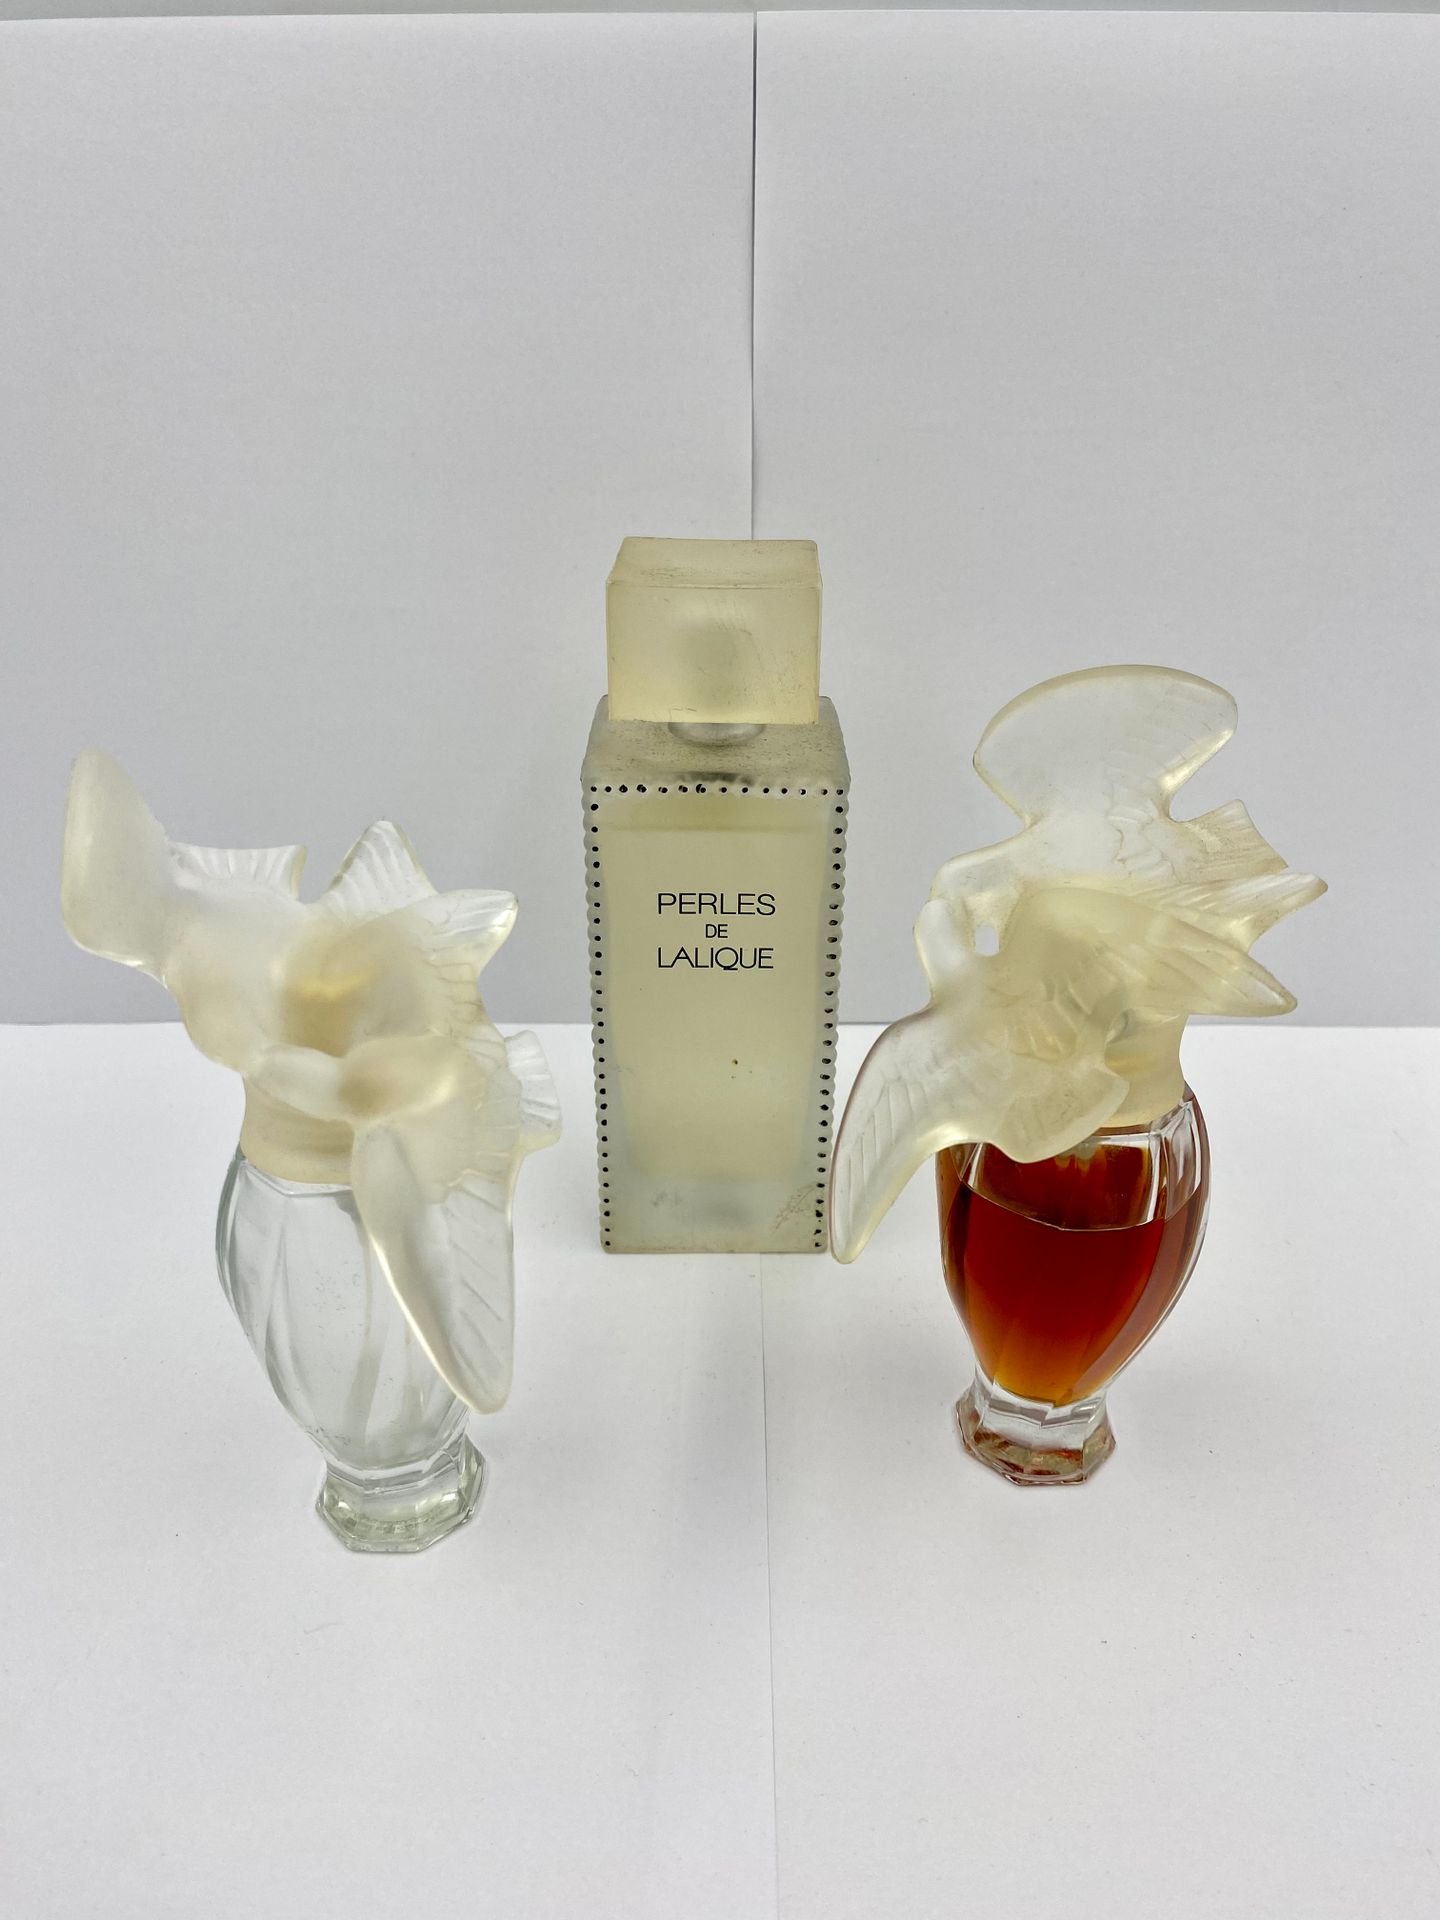 PARFUMS LALIQUE RICCI Juego de perfume: NINA RICCI, Air du temps dos frascos; al&hellip;